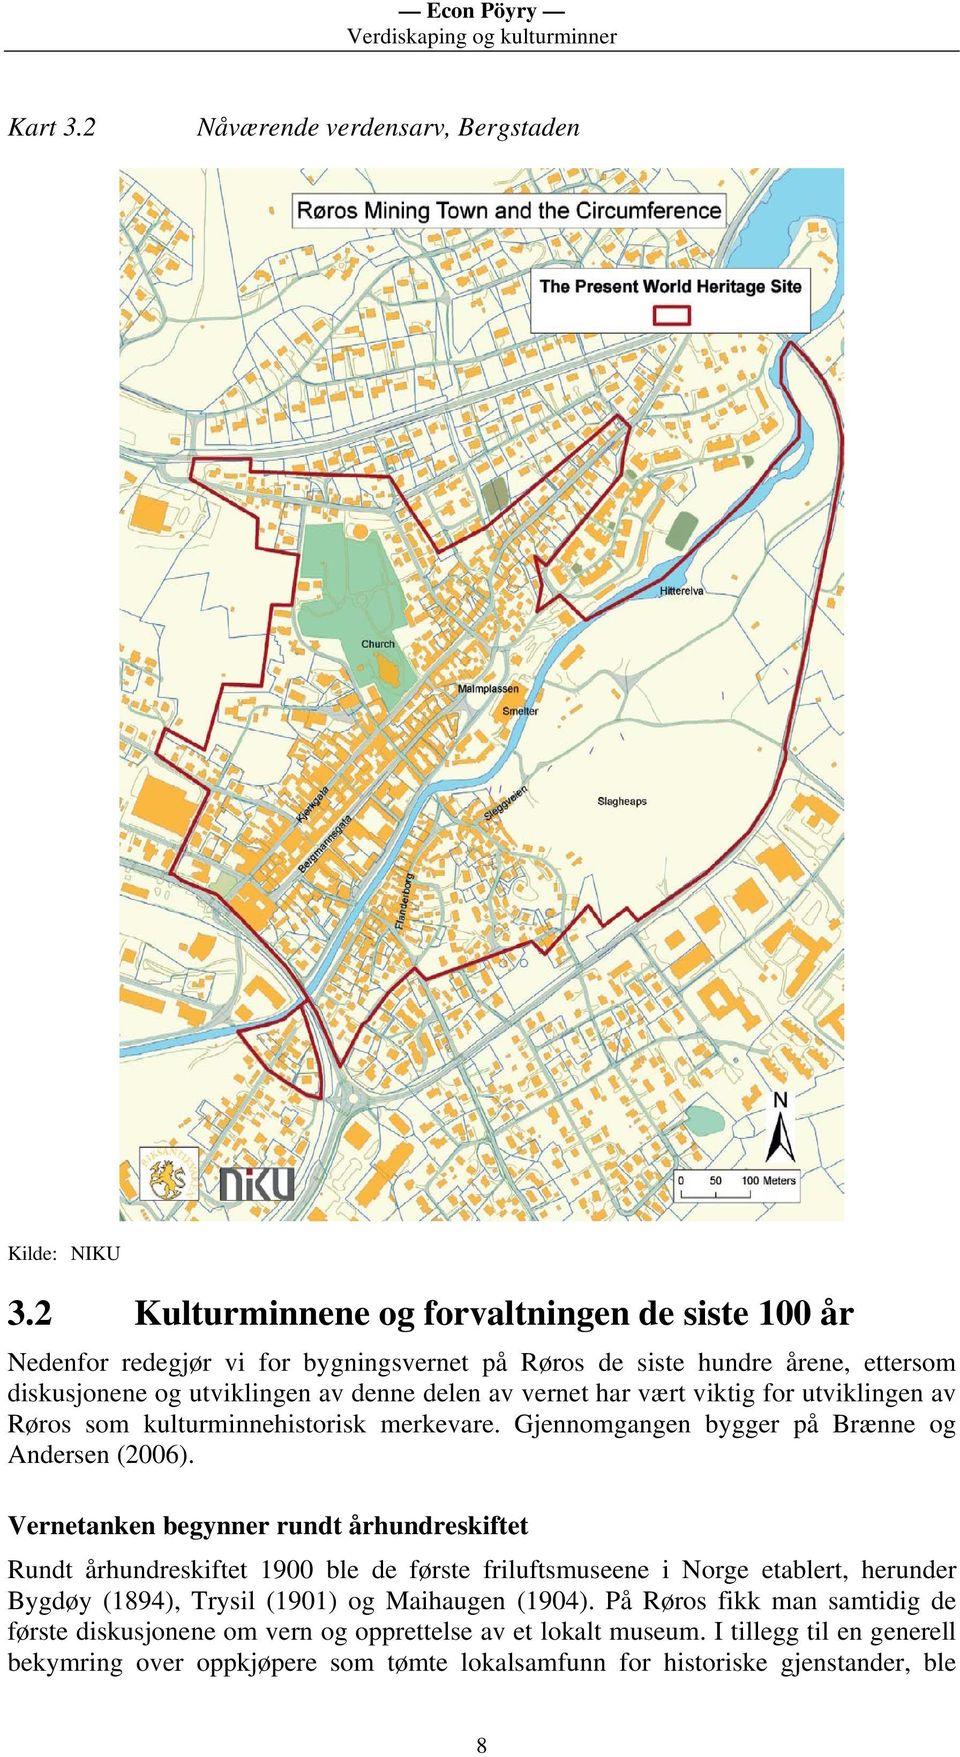 vært viktig for utviklingen av Røros som kulturminnehistorisk merkevare. Gjennomgangen bygger på Brænne og Andersen (2006).